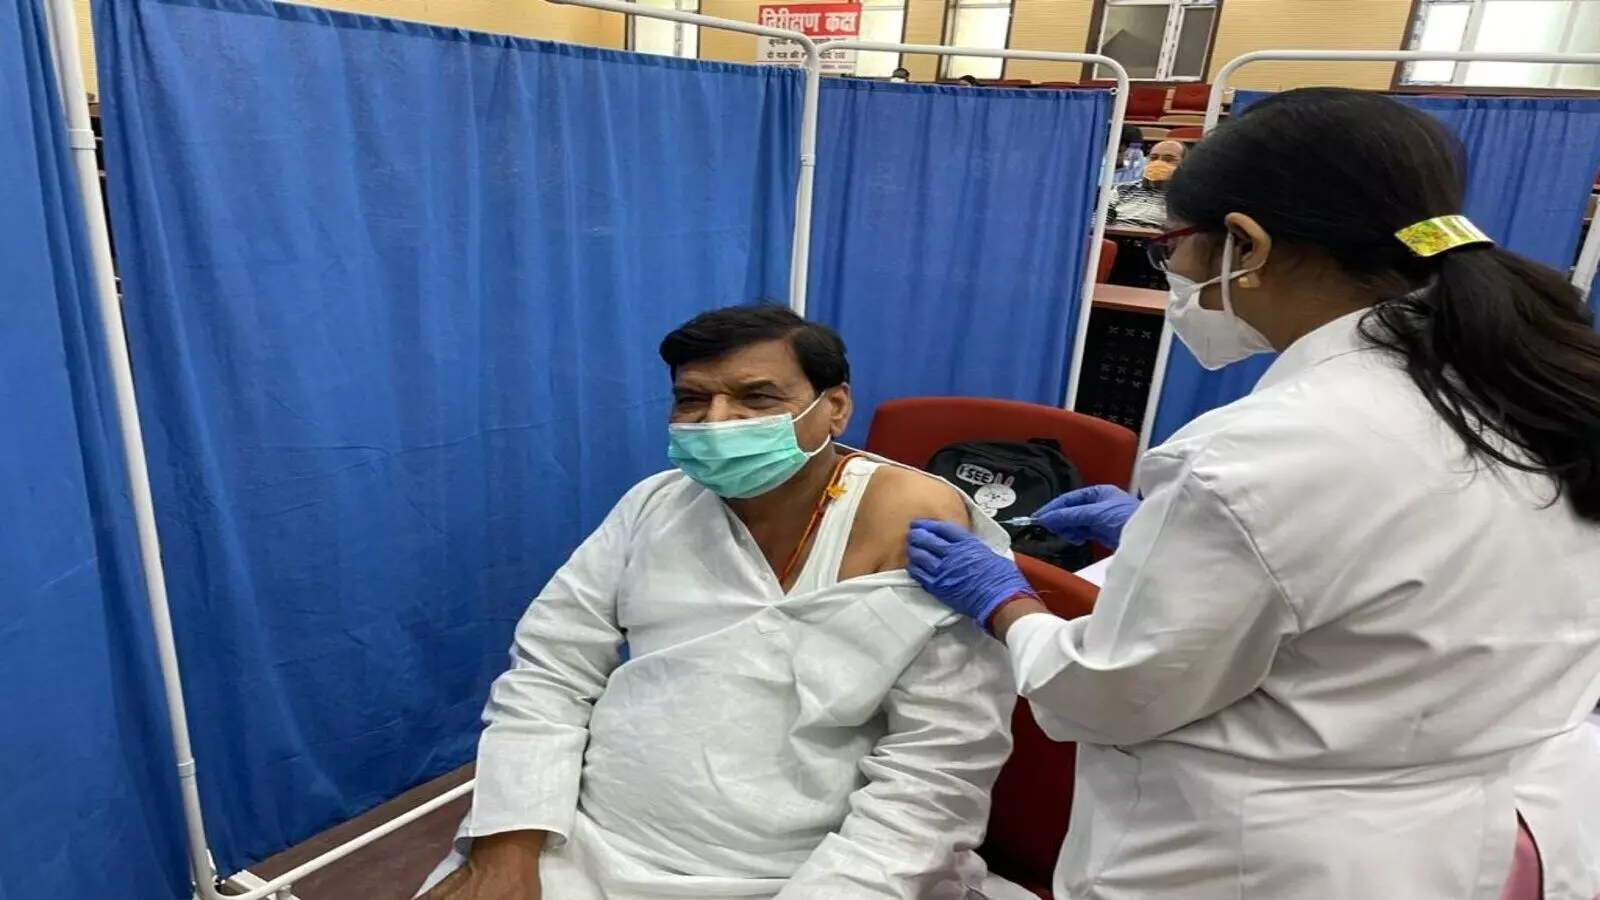 प्रसपा नेता शिवपाल सिंह यादव ने ली वैक्सीन की पहली डोज, देखें तस्वीरें